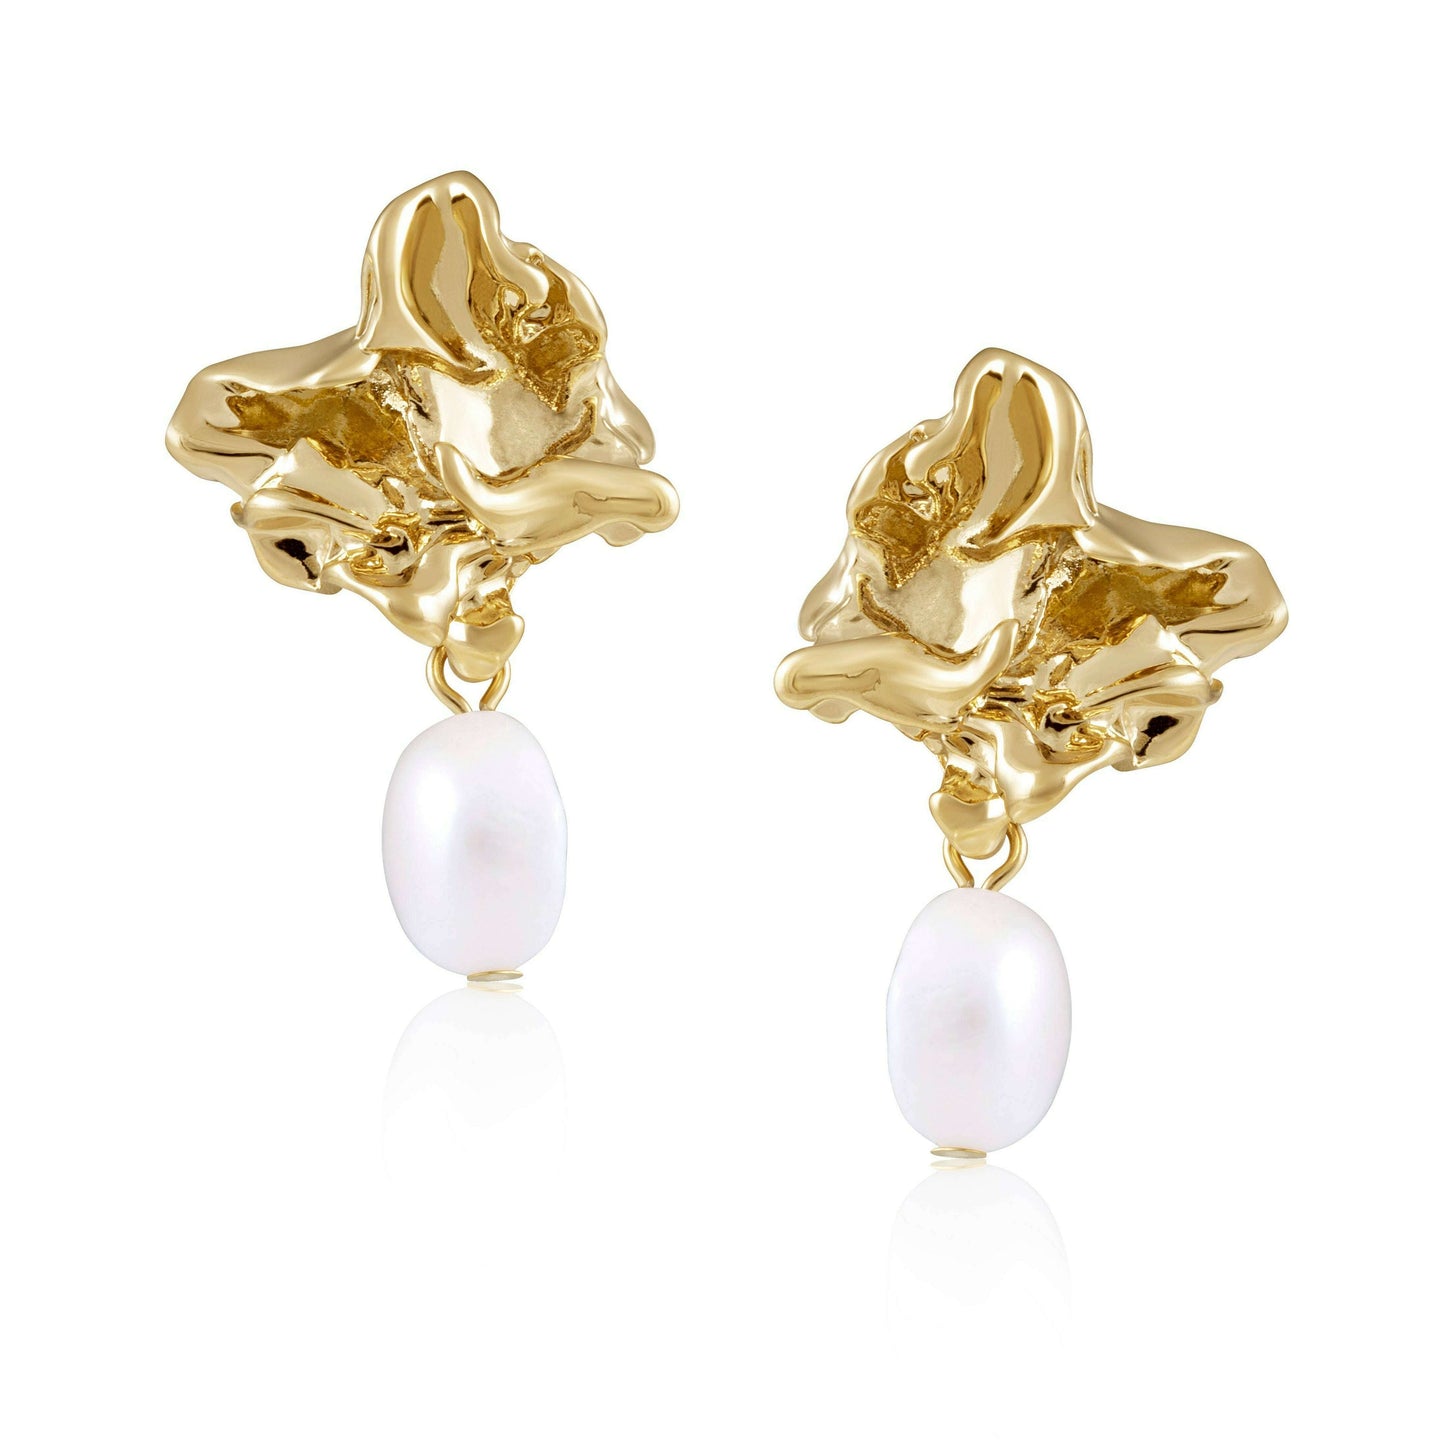 Sahira Jewelry Design - Greta Pearl Earring - Gold/Pearl, ACCESSORIES, Sahira Jewelry Design, Plum Bottom